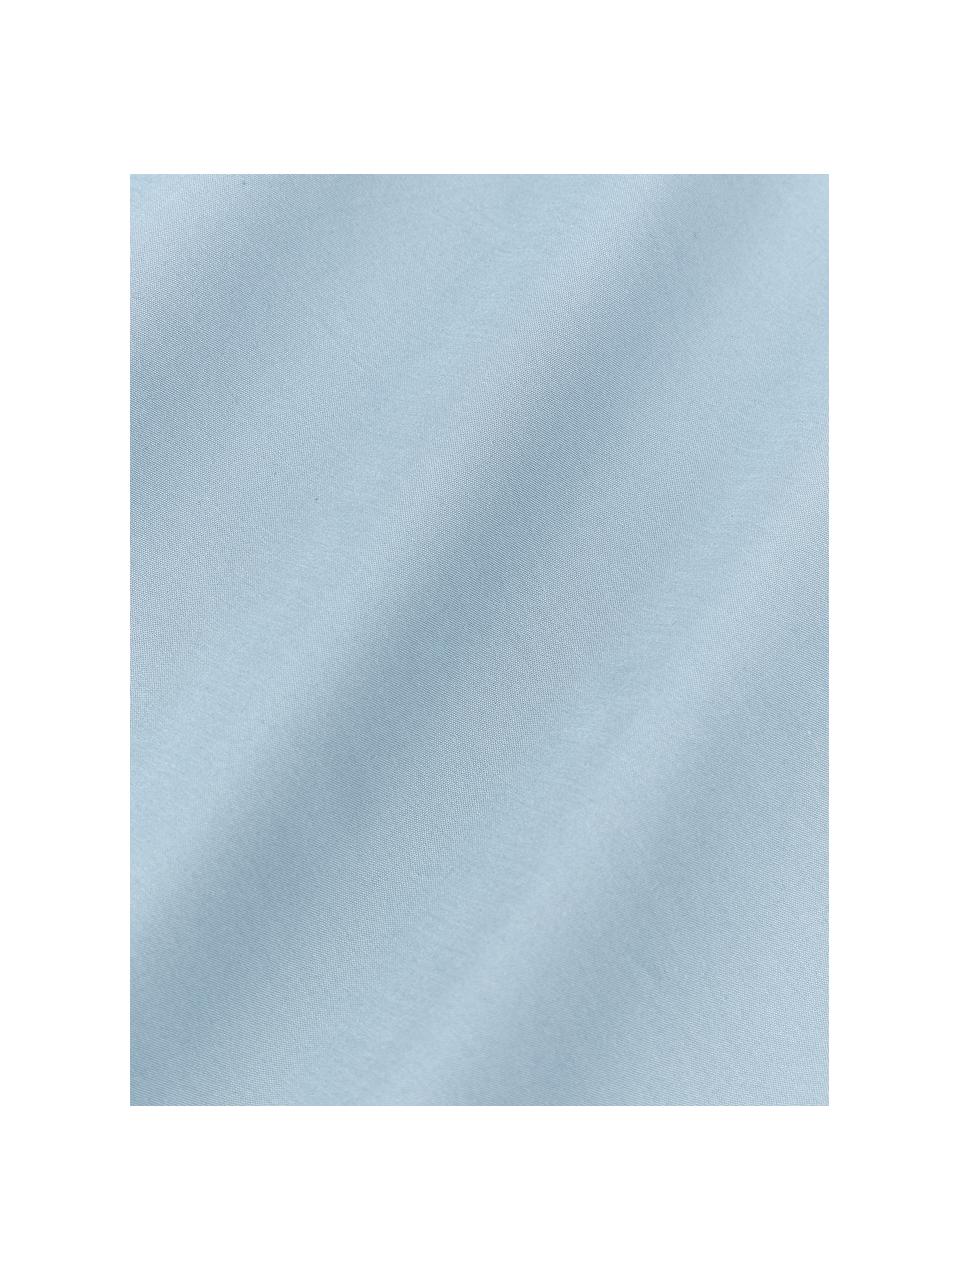 Sábana bajera de sobrecolchón de percal Elsie, Azul claro, Cama 90 cm (90 x 200 x 15 cm)